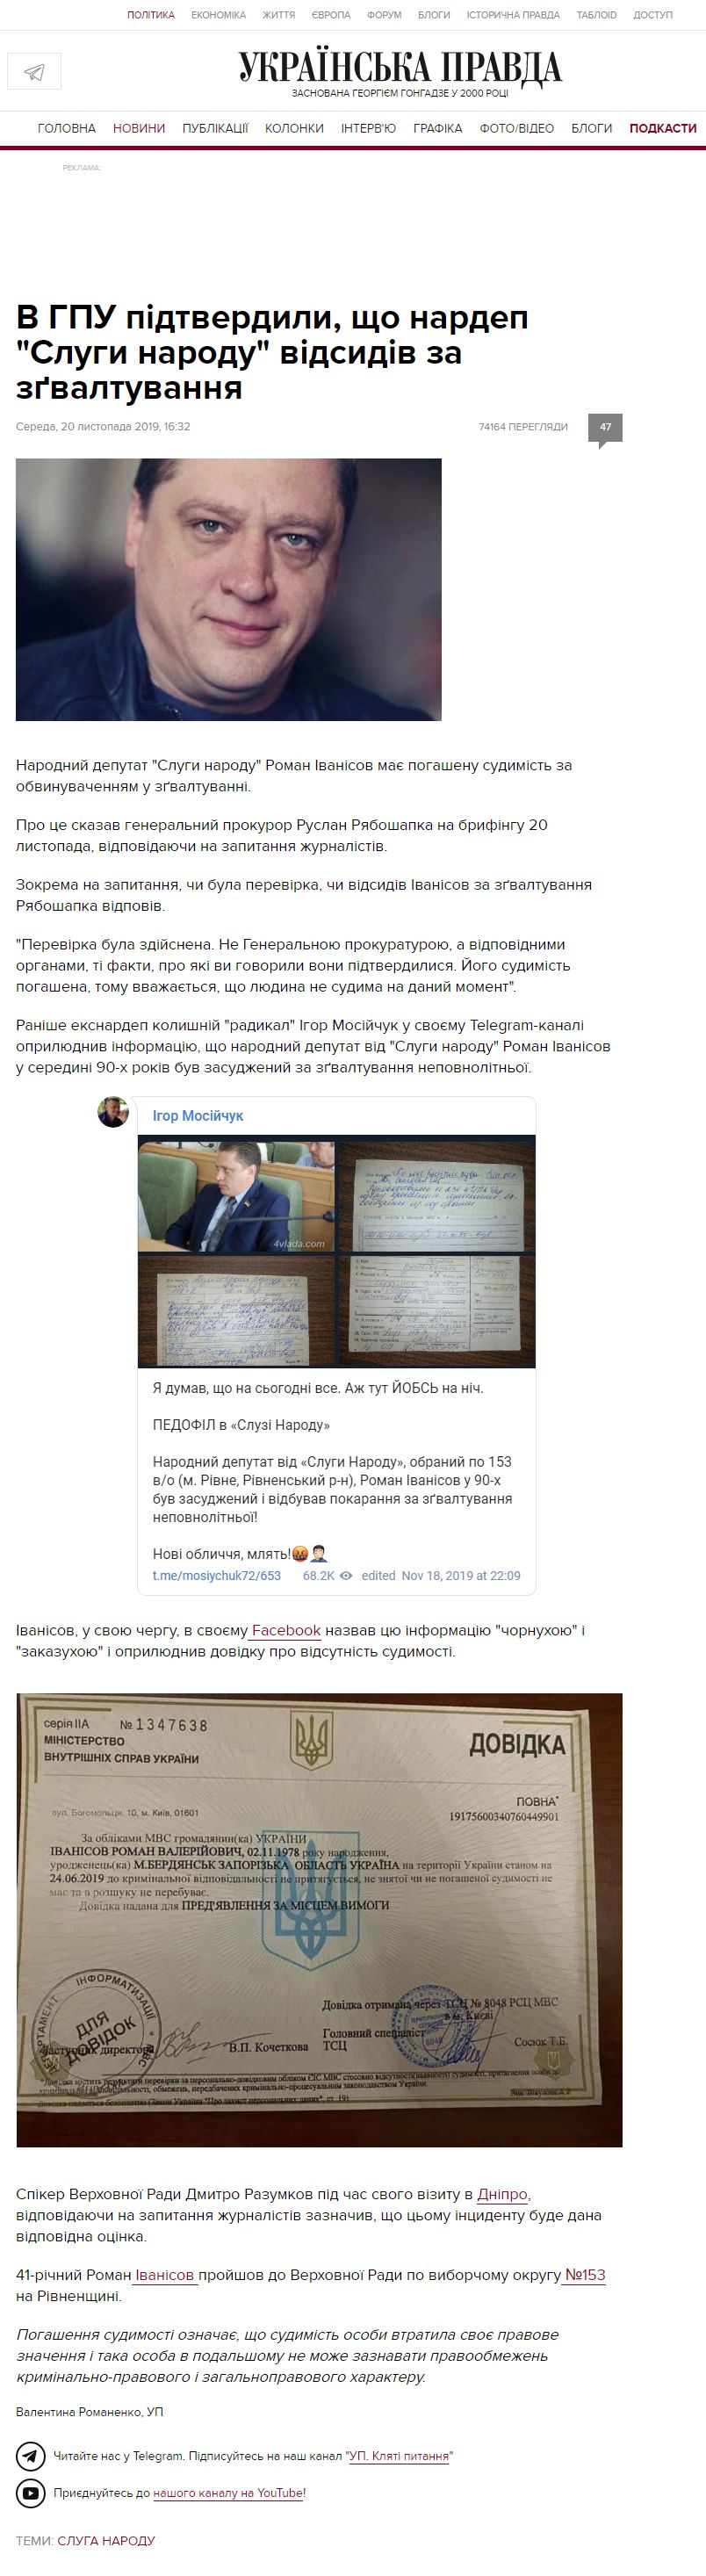 https://www.pravda.com.ua/news/2019/11/20/7232544/